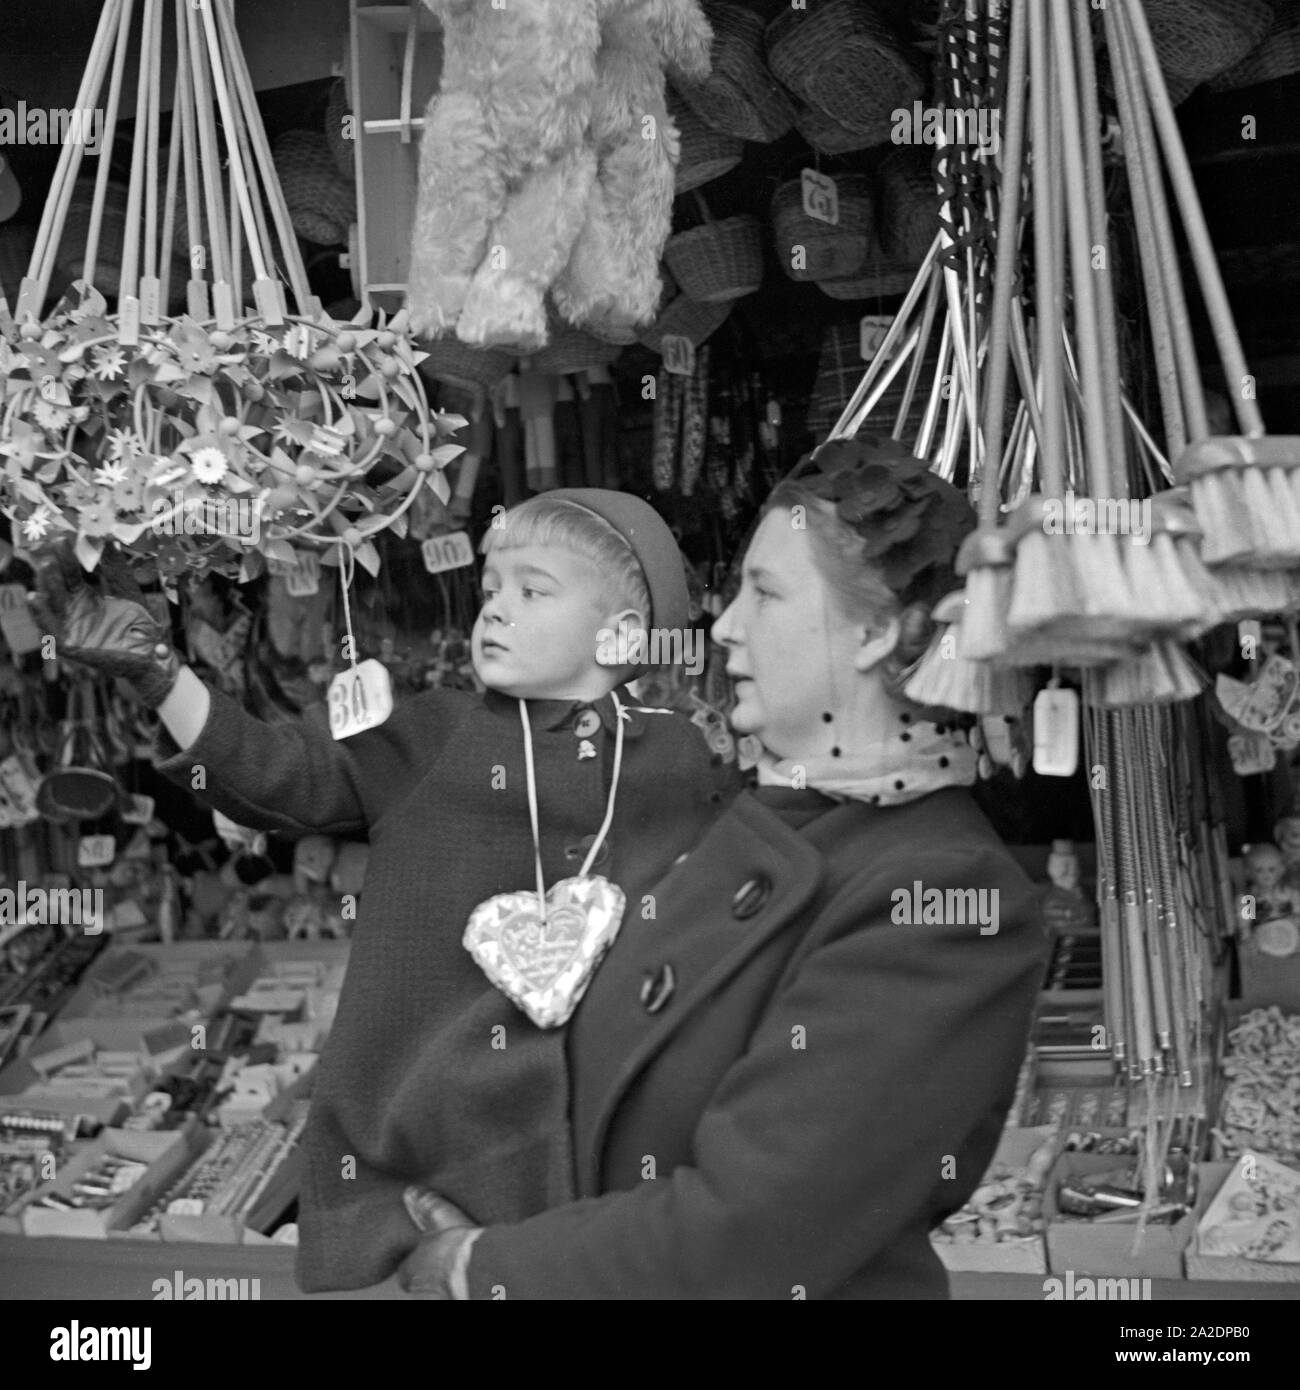 Ein kleiner Junge auf dem am Spielzeugstand bras senneur Mutter auf dem Weihnachtsmarkt Deutschland, 1930er Jahre. Un petit garçon dans les bras de sa mère au stand de jouets du marché de Noël, de l'Allemagne des années 1930. Banque D'Images